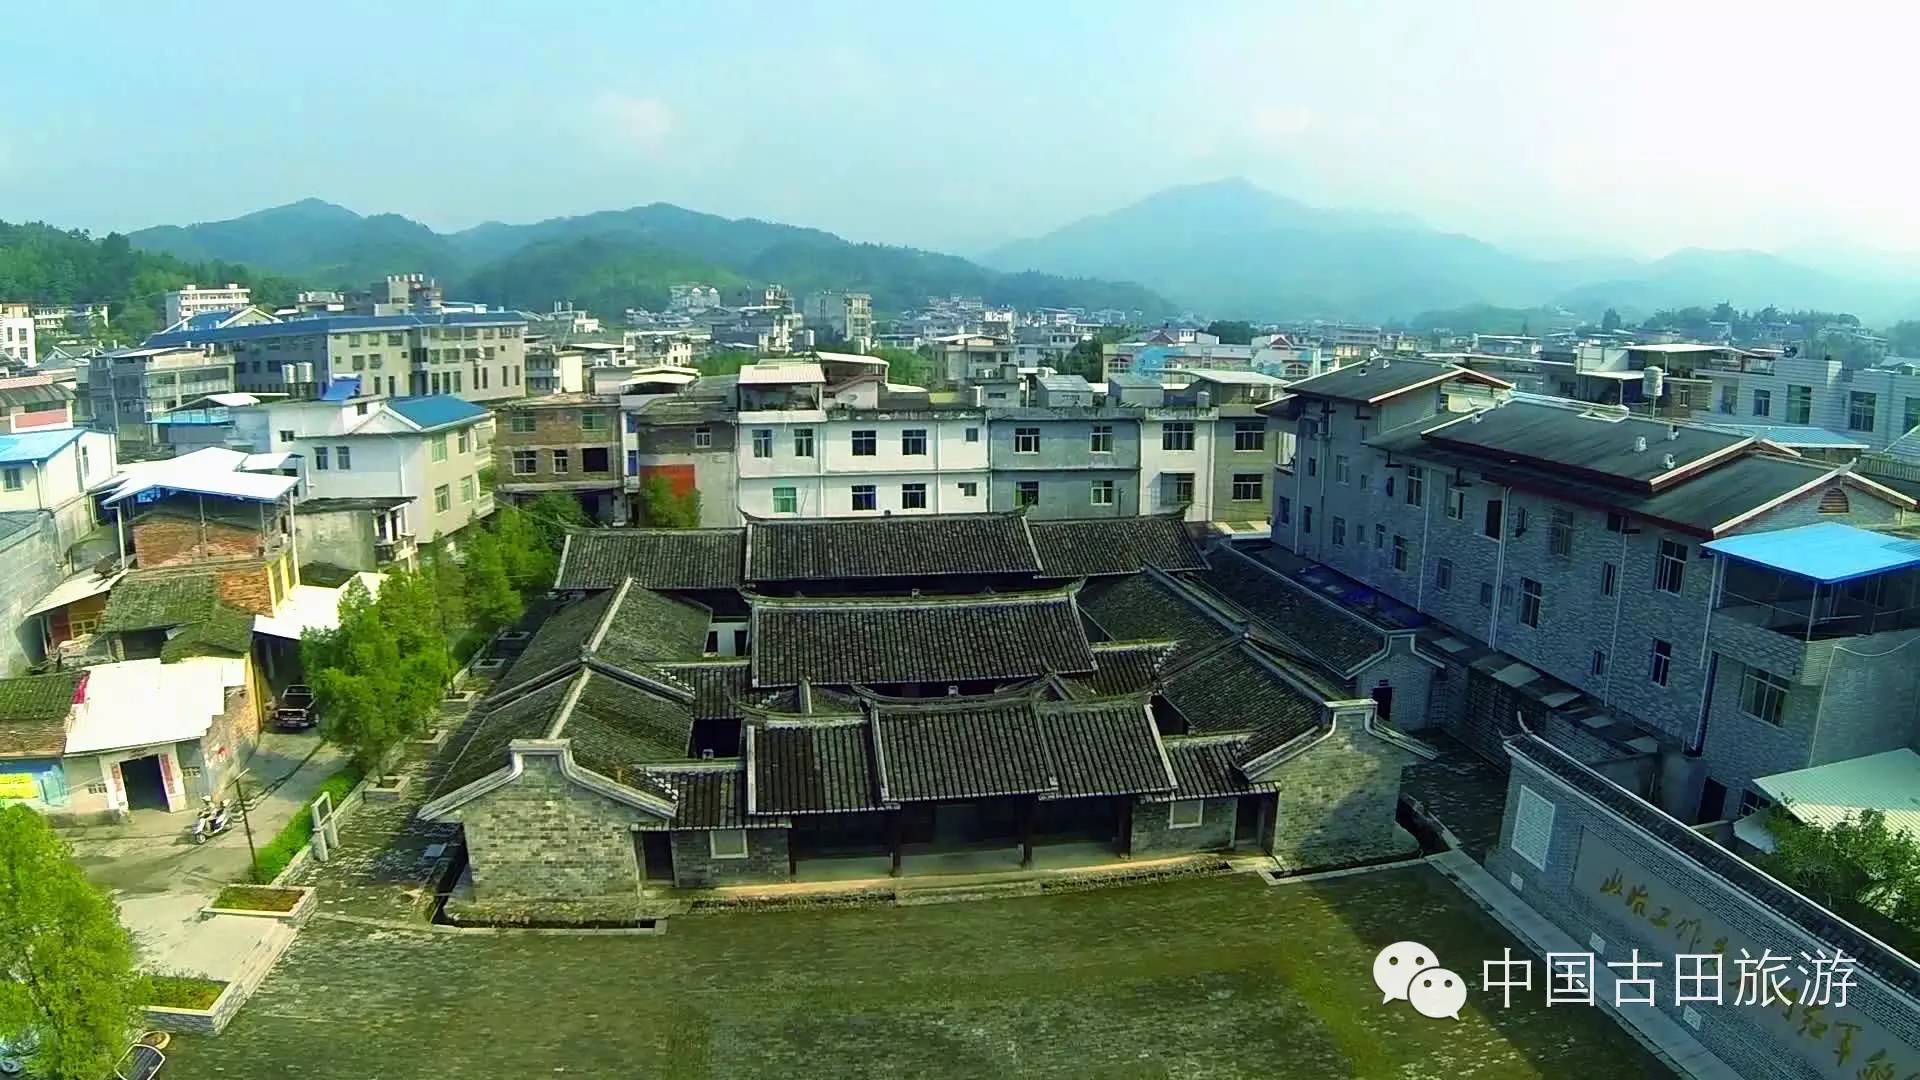 重磅喜讯!上杭古田镇被列入第一批中国特色镇